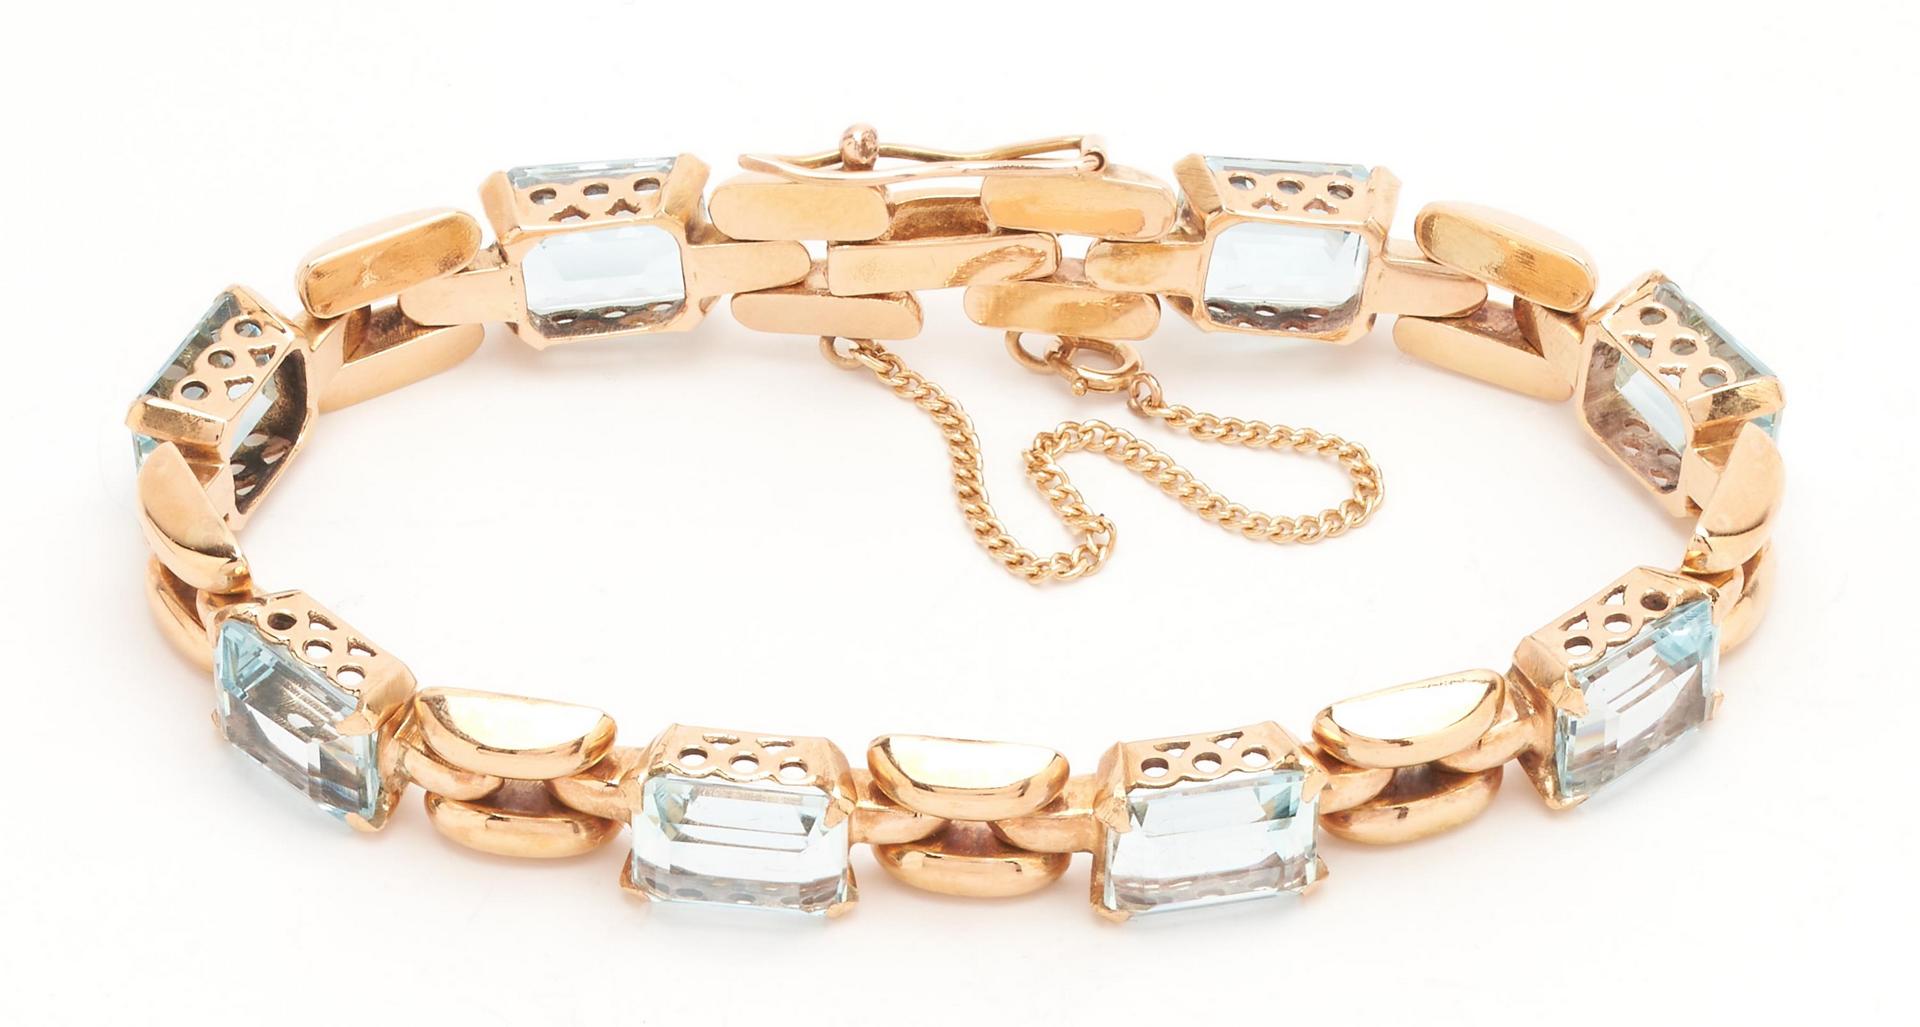 Lot 65: Ladies 18K Aquamarine Bracelet